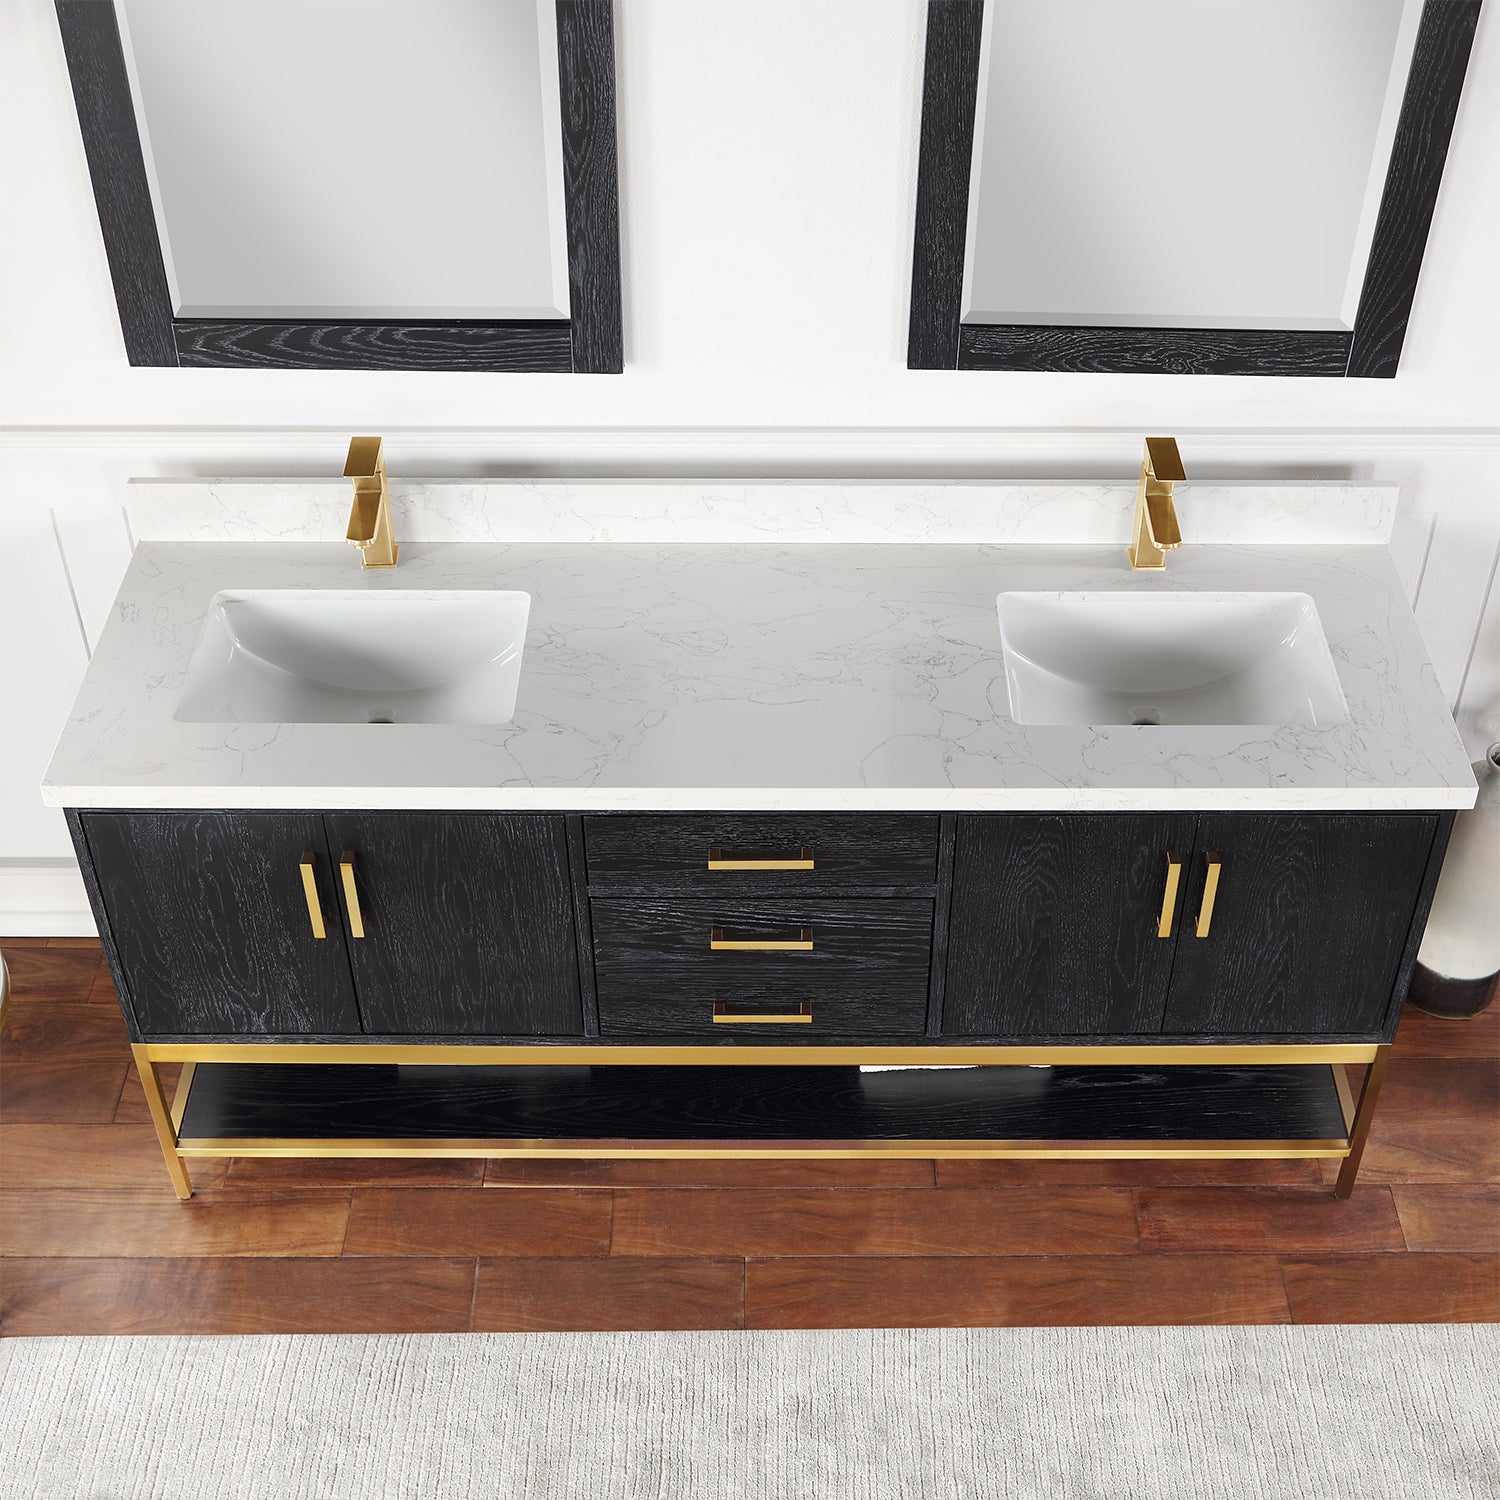 Wildy 72" Double Bathroom Vanity Set with Grain White Composite Stone Countertop